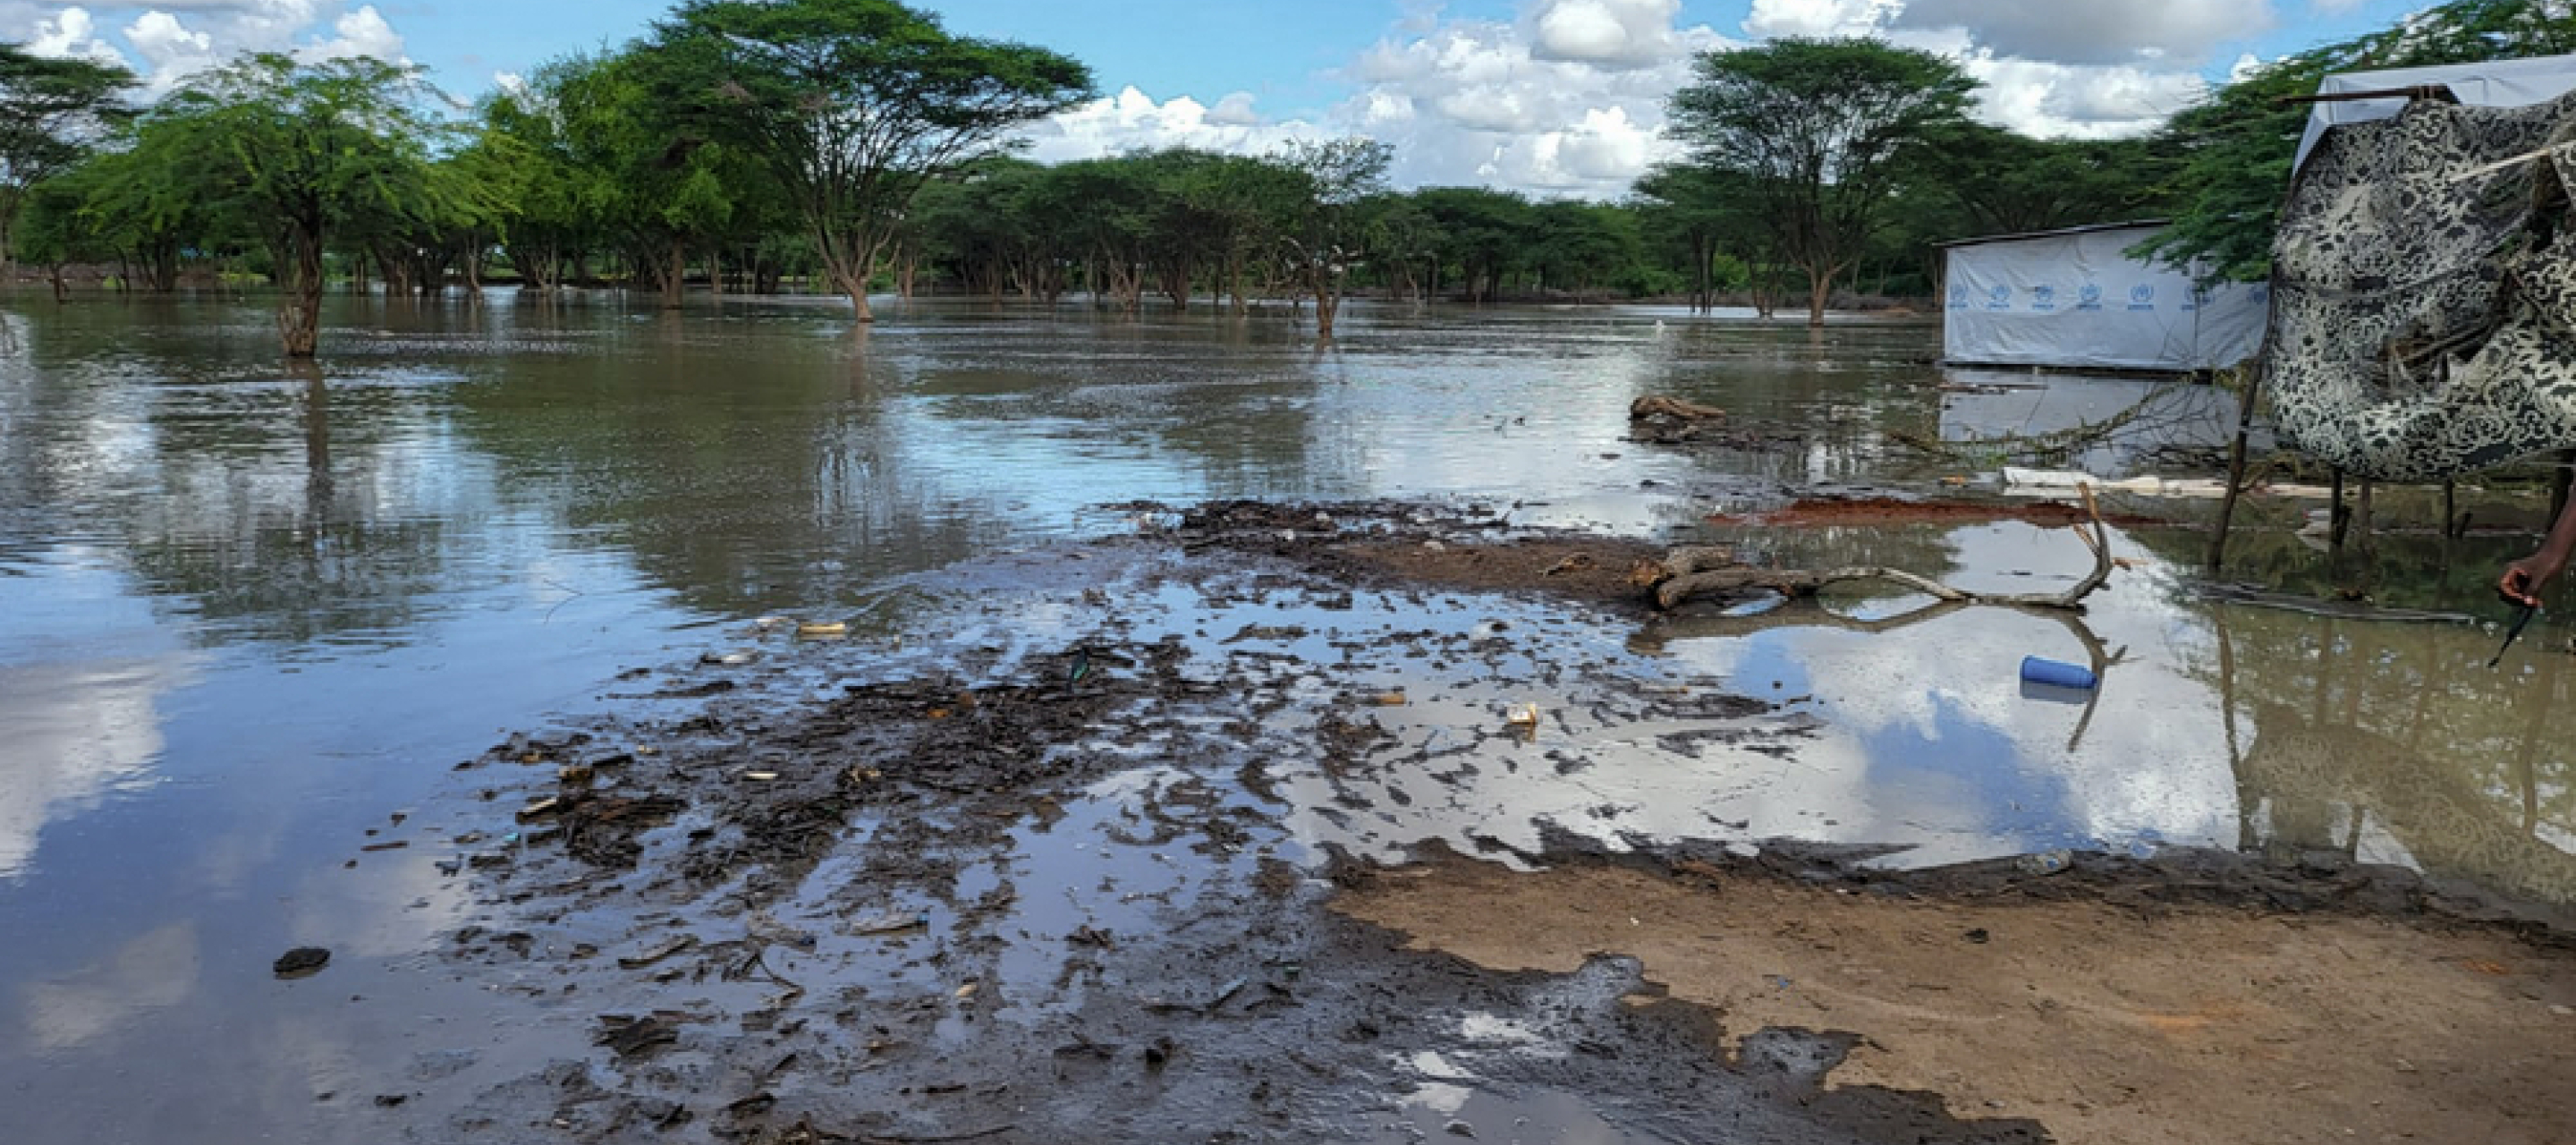 Überflutete Landschaft in Kenia